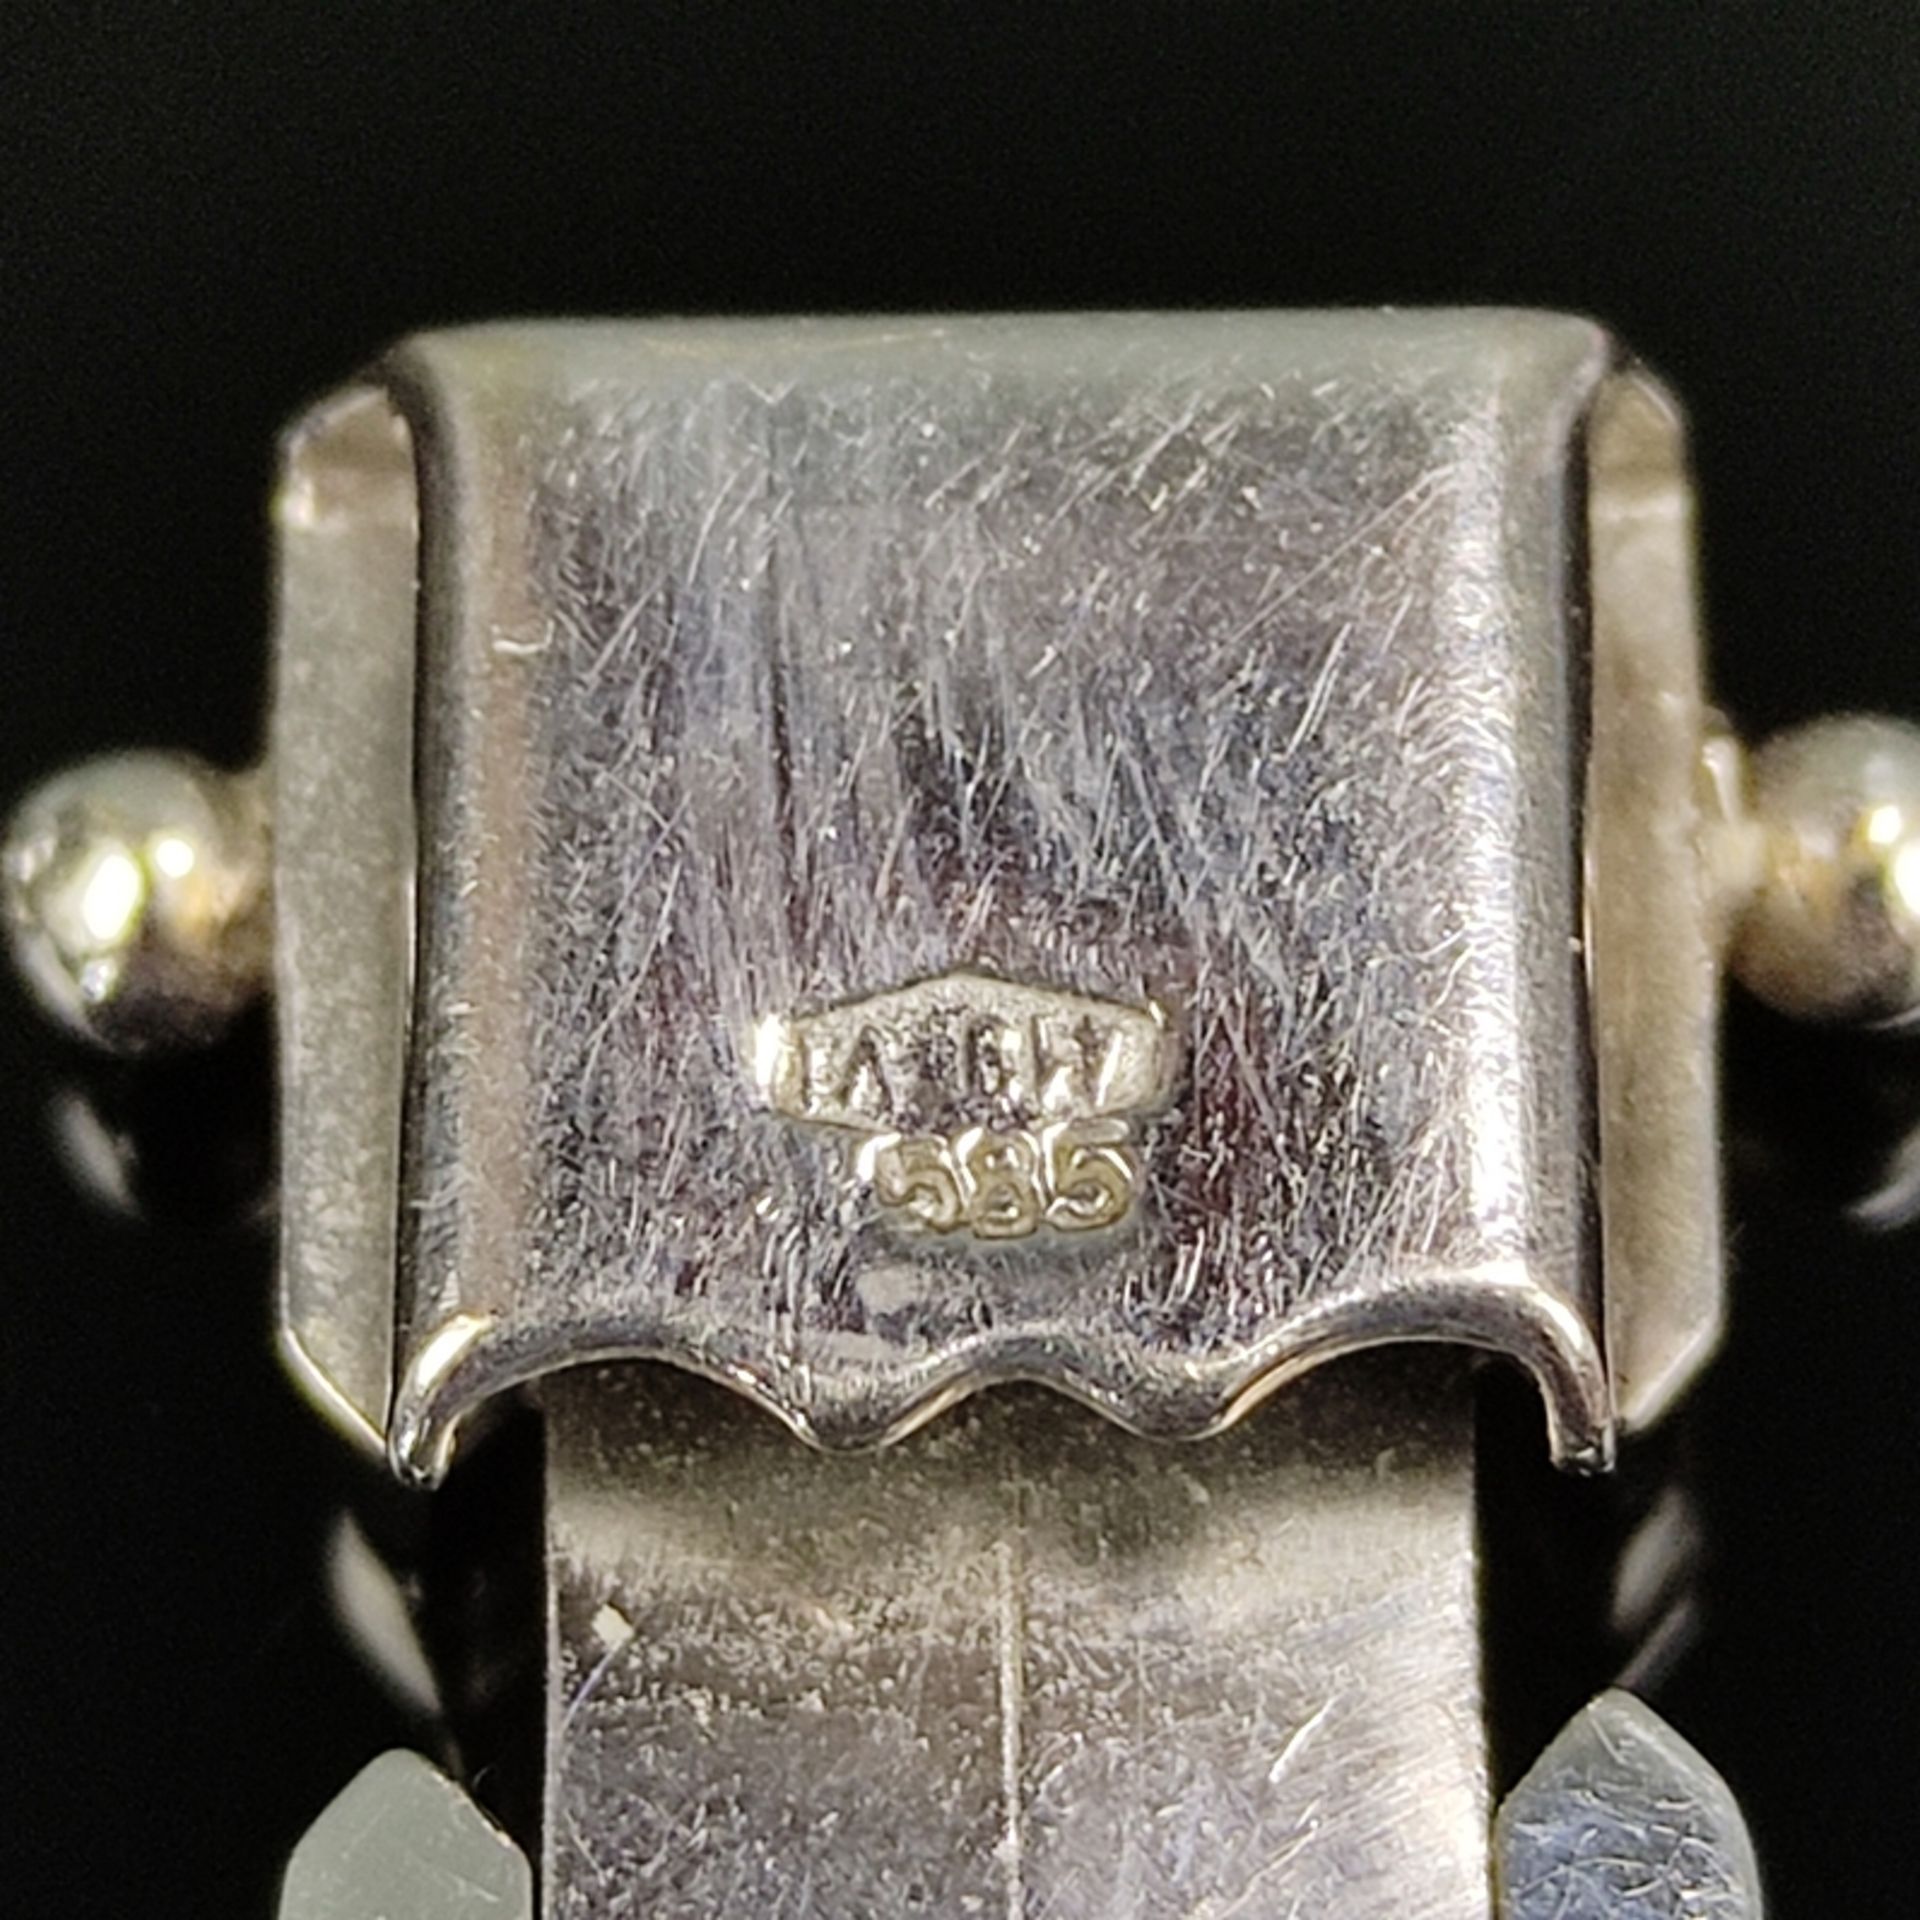 Armband, 585/14K Weißgold (punziert), 22,9g, gefertigt aus einzelnen flexiblen Gliedern, Steckschli - Bild 3 aus 3